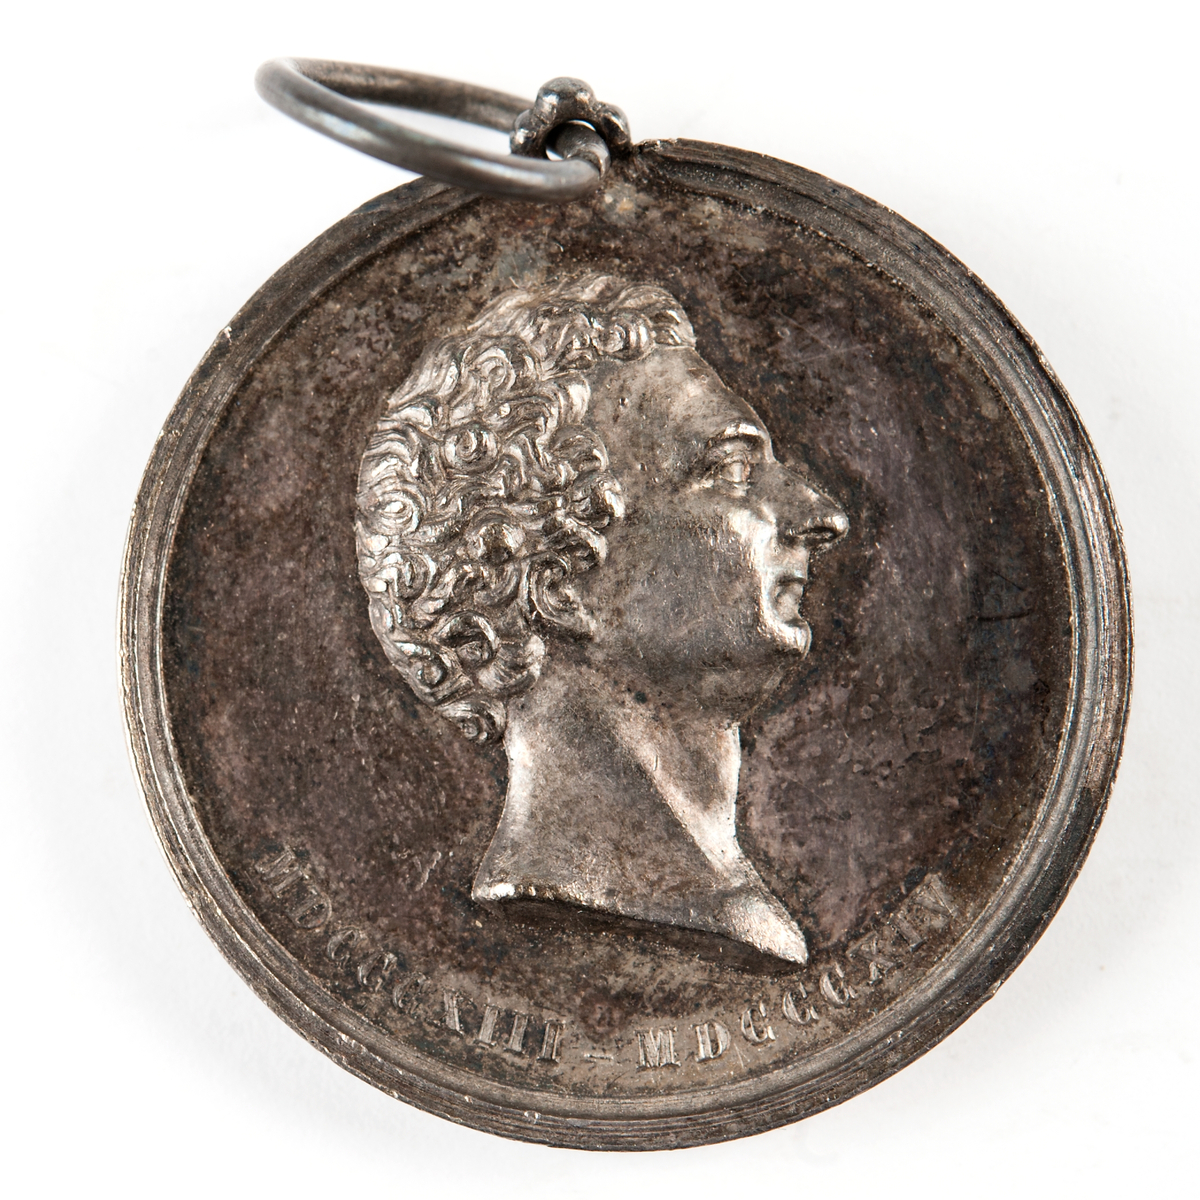 Åtsida: Bröstbild av Karl XIV Johan
Frånsida: Staty av Karl XIV Johan till häst